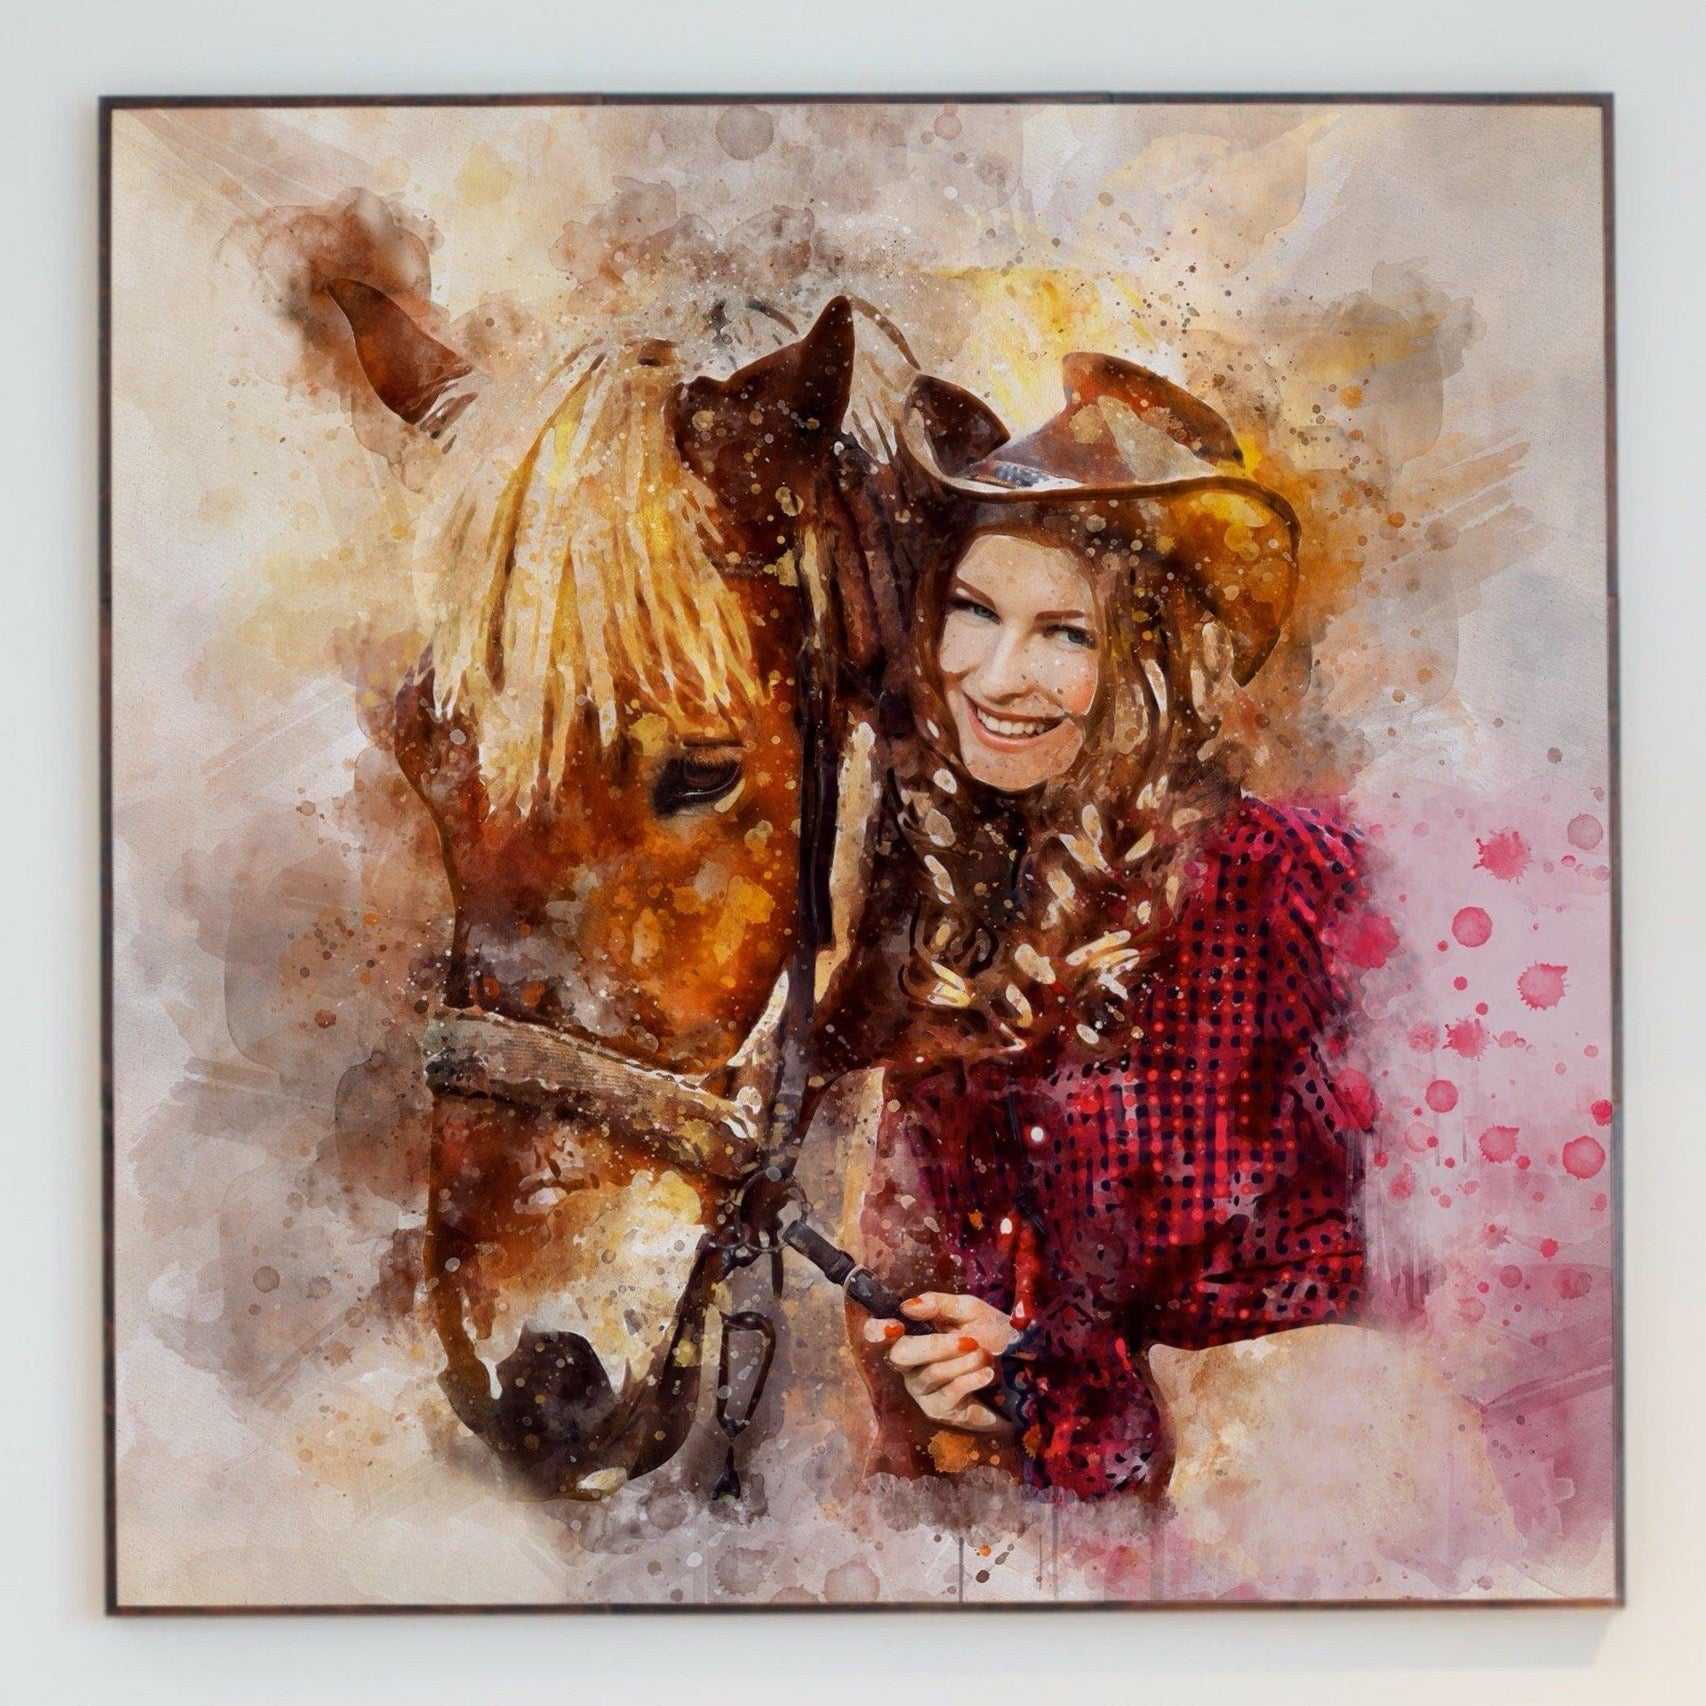 Custom Watercolor Horse Paintings | Custom Horse Paintings on Canvas | Your Horse Painted on Canvas - FromPicToArt